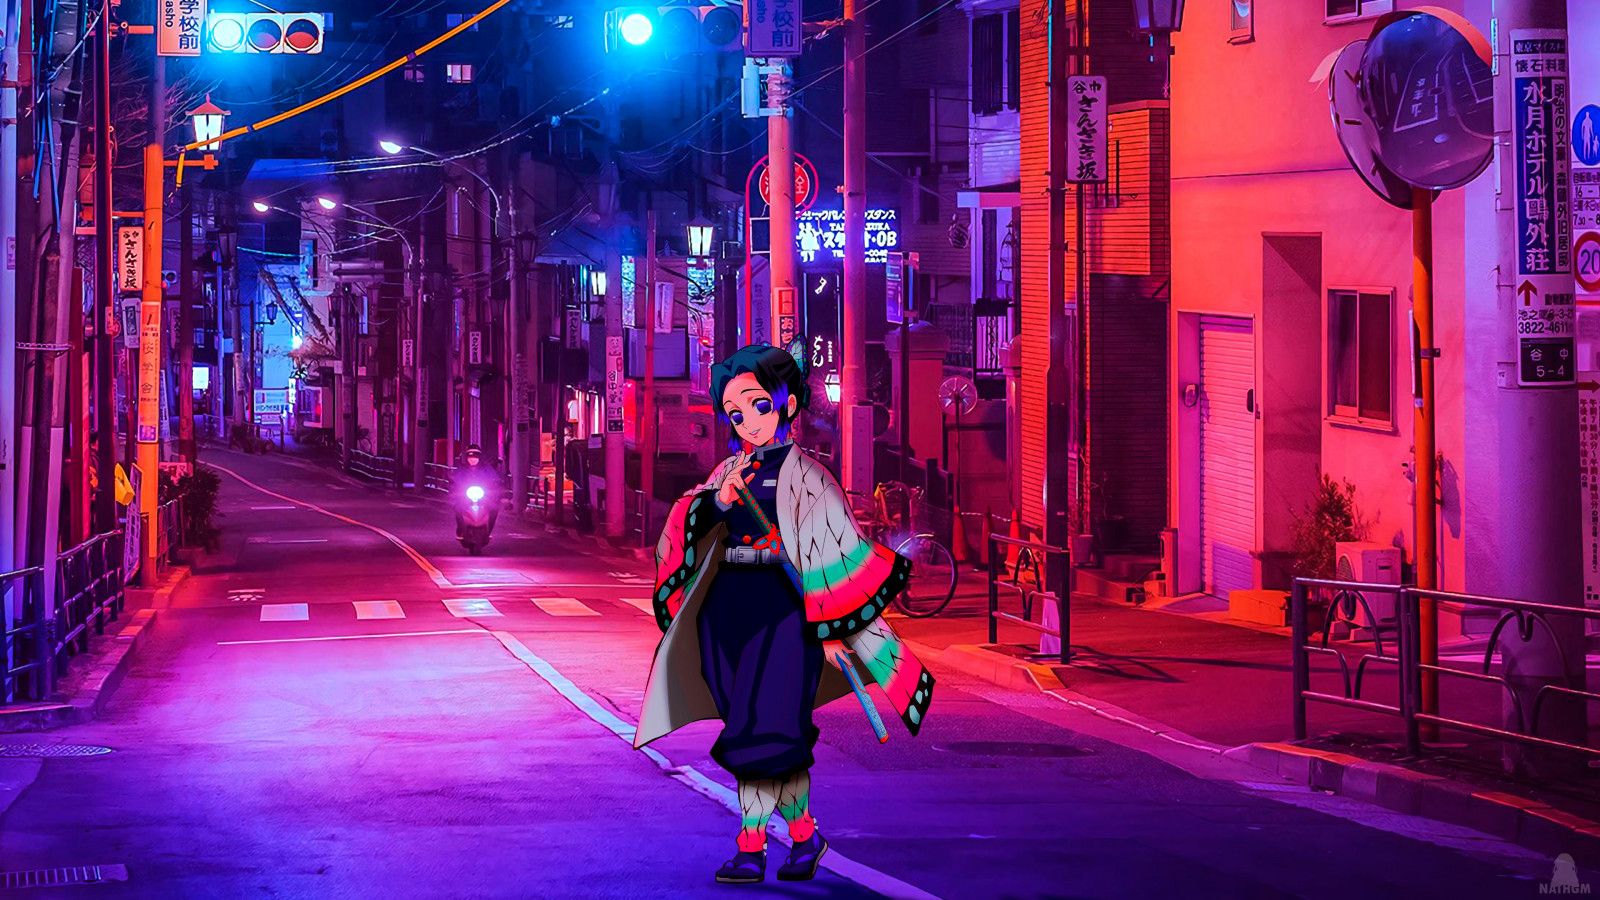 Wallpaper, anime girls, Kimetsu no Yaiba, Kochou Shinobu, night, city, neon 3840x2160 - 倾木雨一